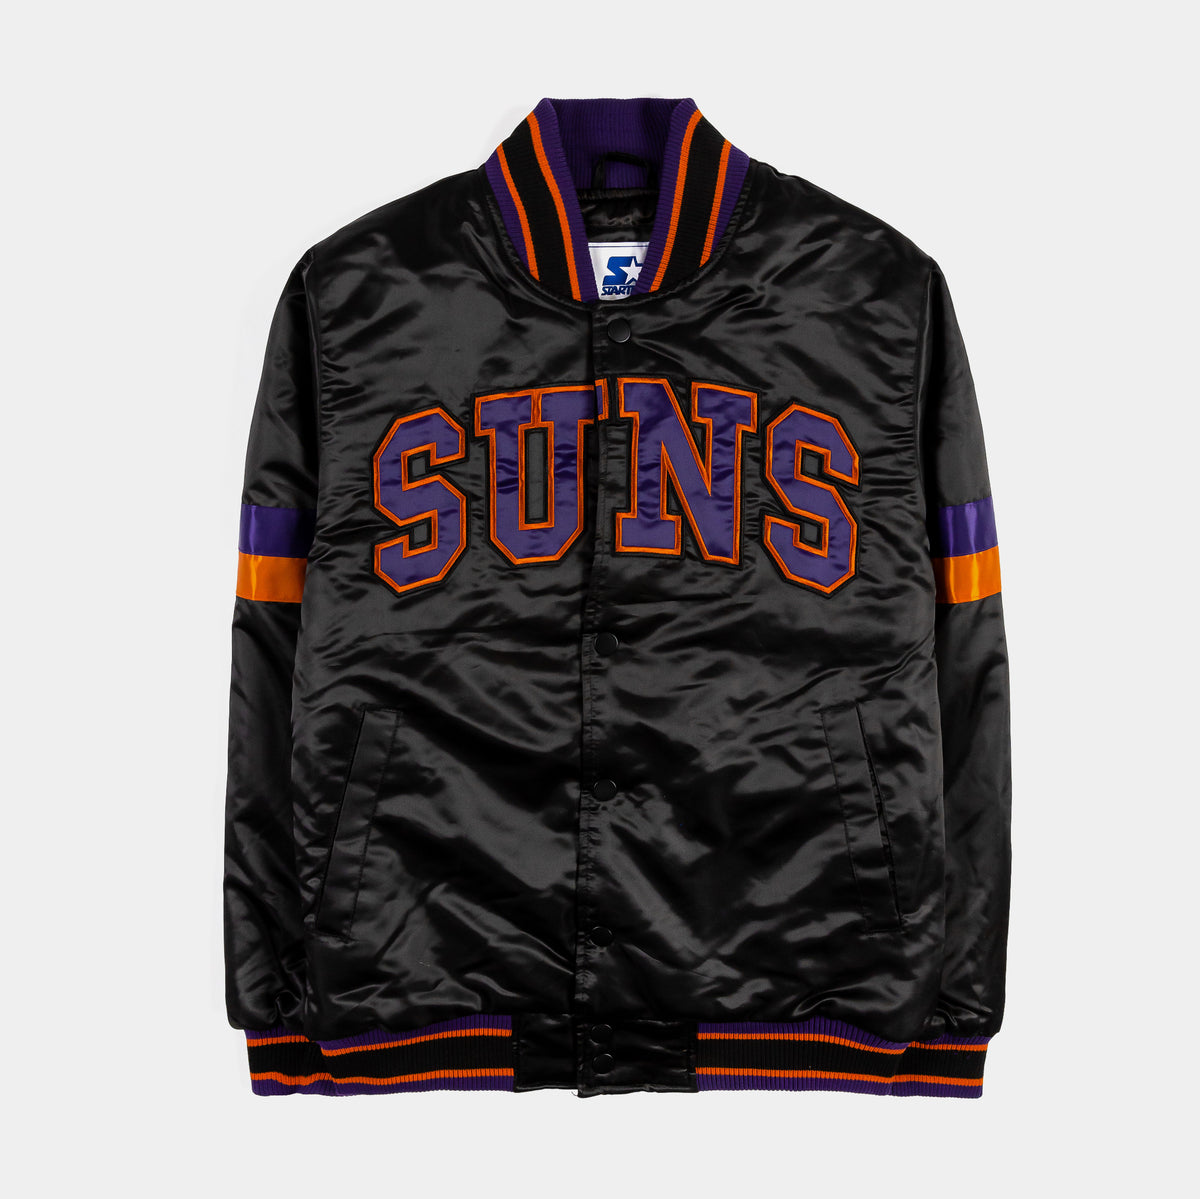 Phoenix Suns NBA Basketball Varsity Letterman Jacket - Maker of Jacket